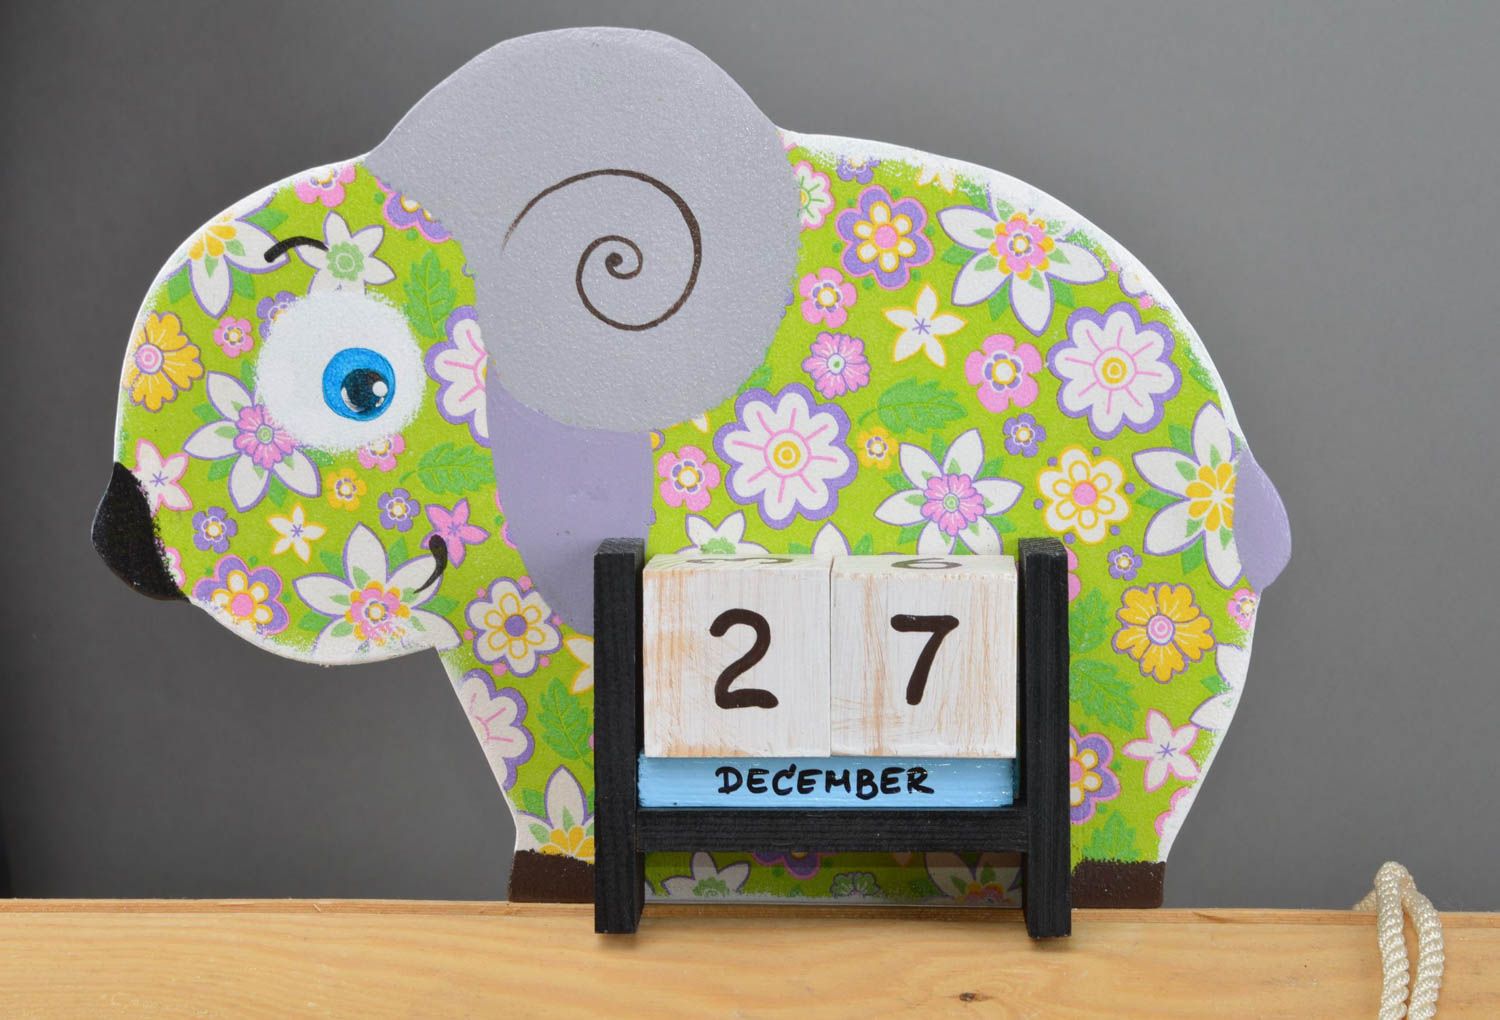 Calendario para niño juguete educativo decoración de interior artesanal ovejita foto 2